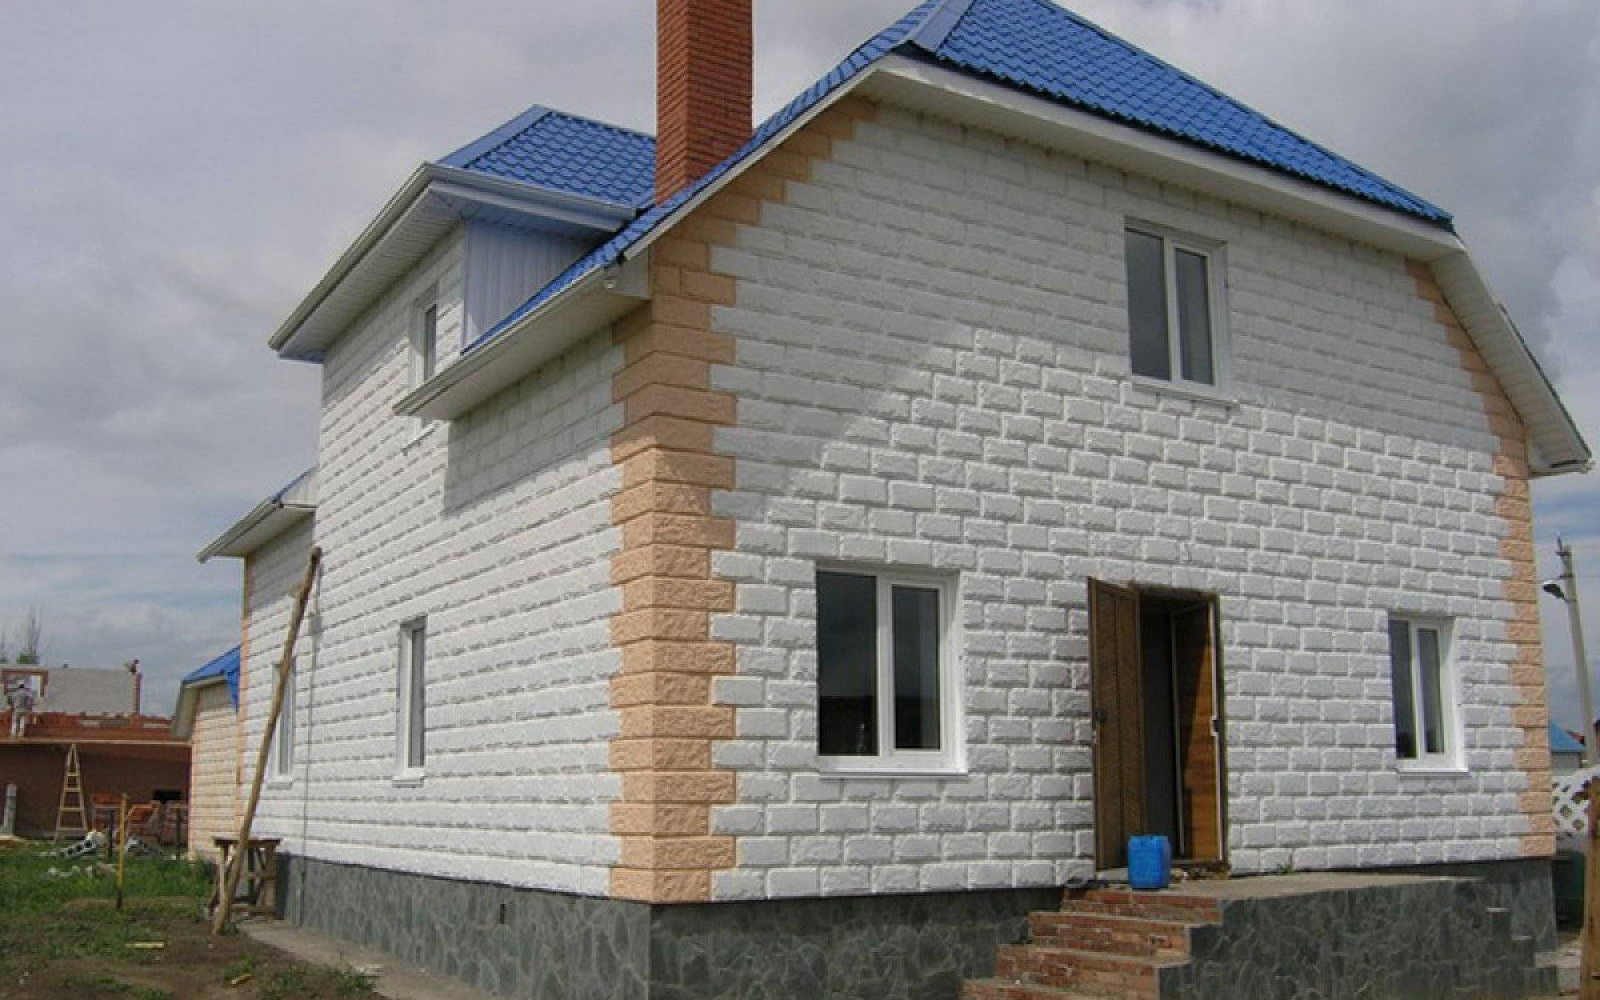 Как построить дом из пеноблоков? Этапы строительства дома из пенобетона